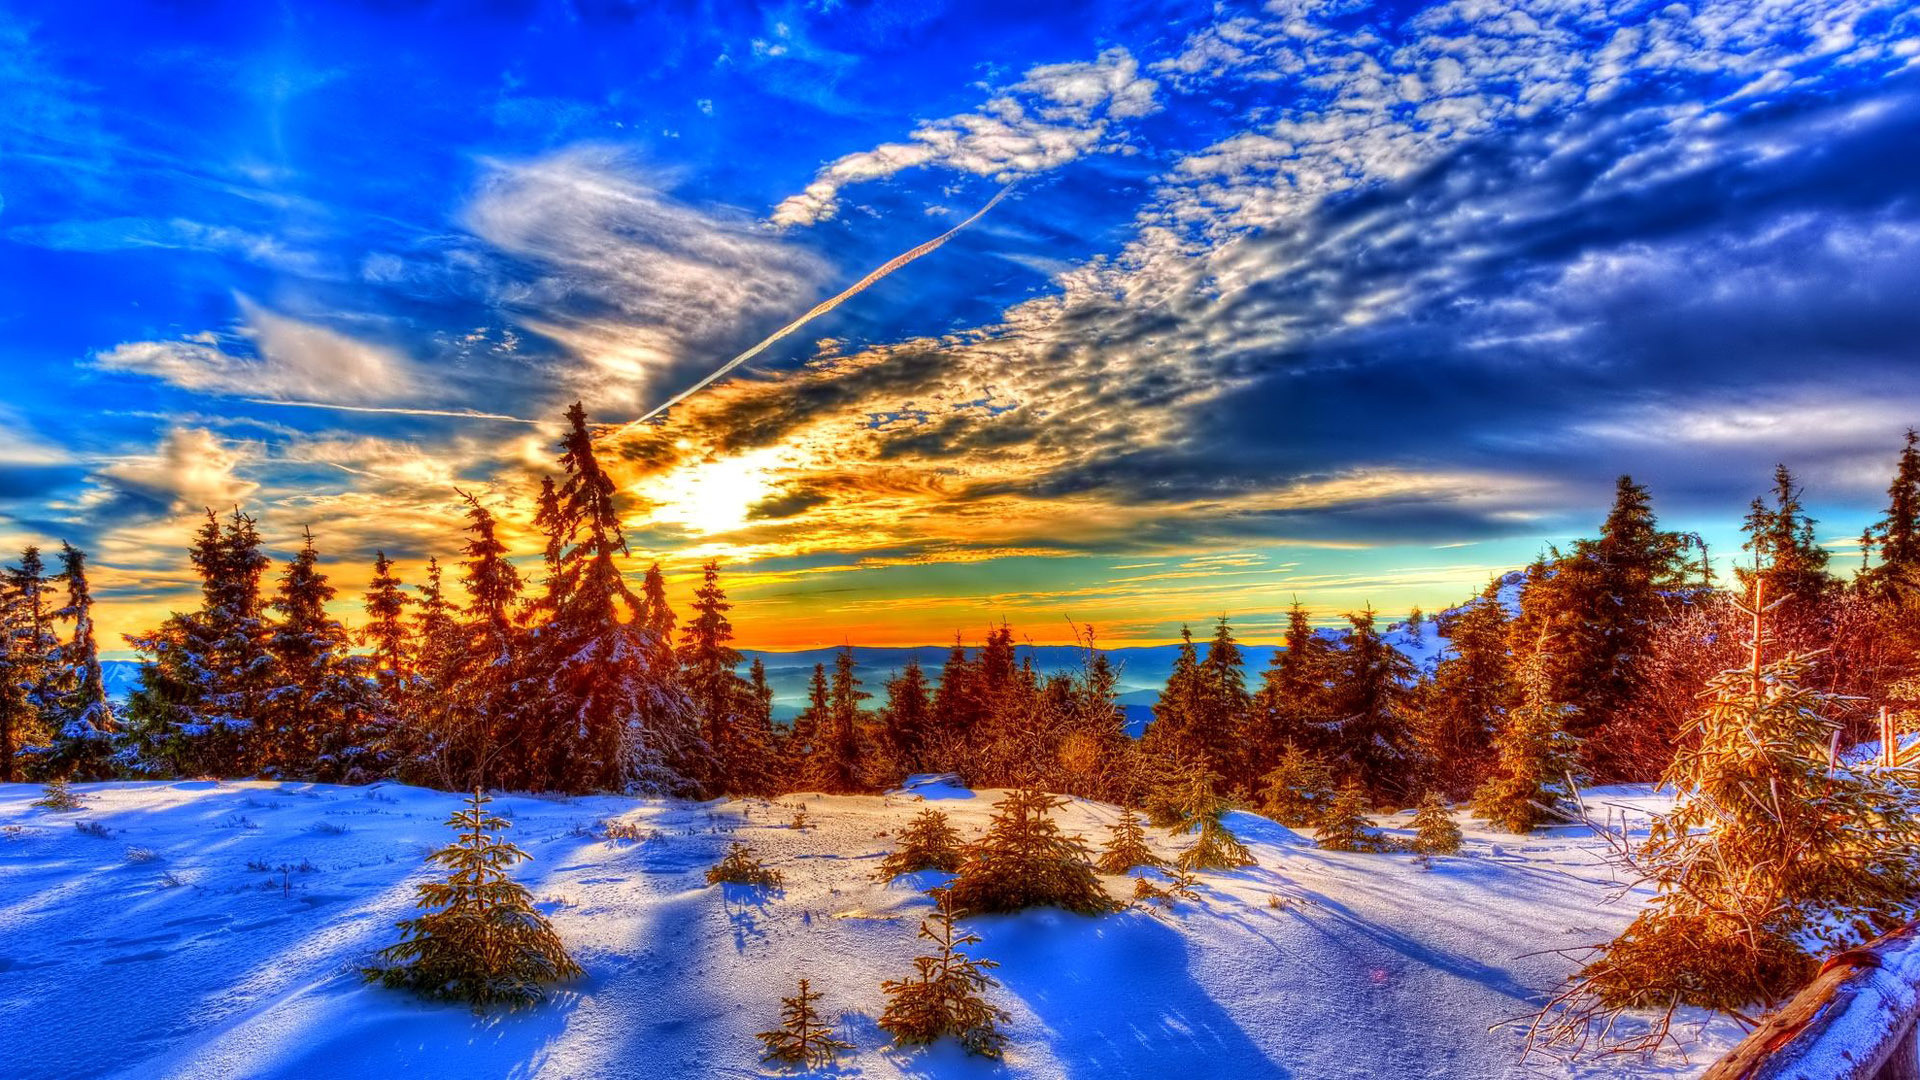 1920x1080 Winter sunlight over pine forest HD Wallpaper 